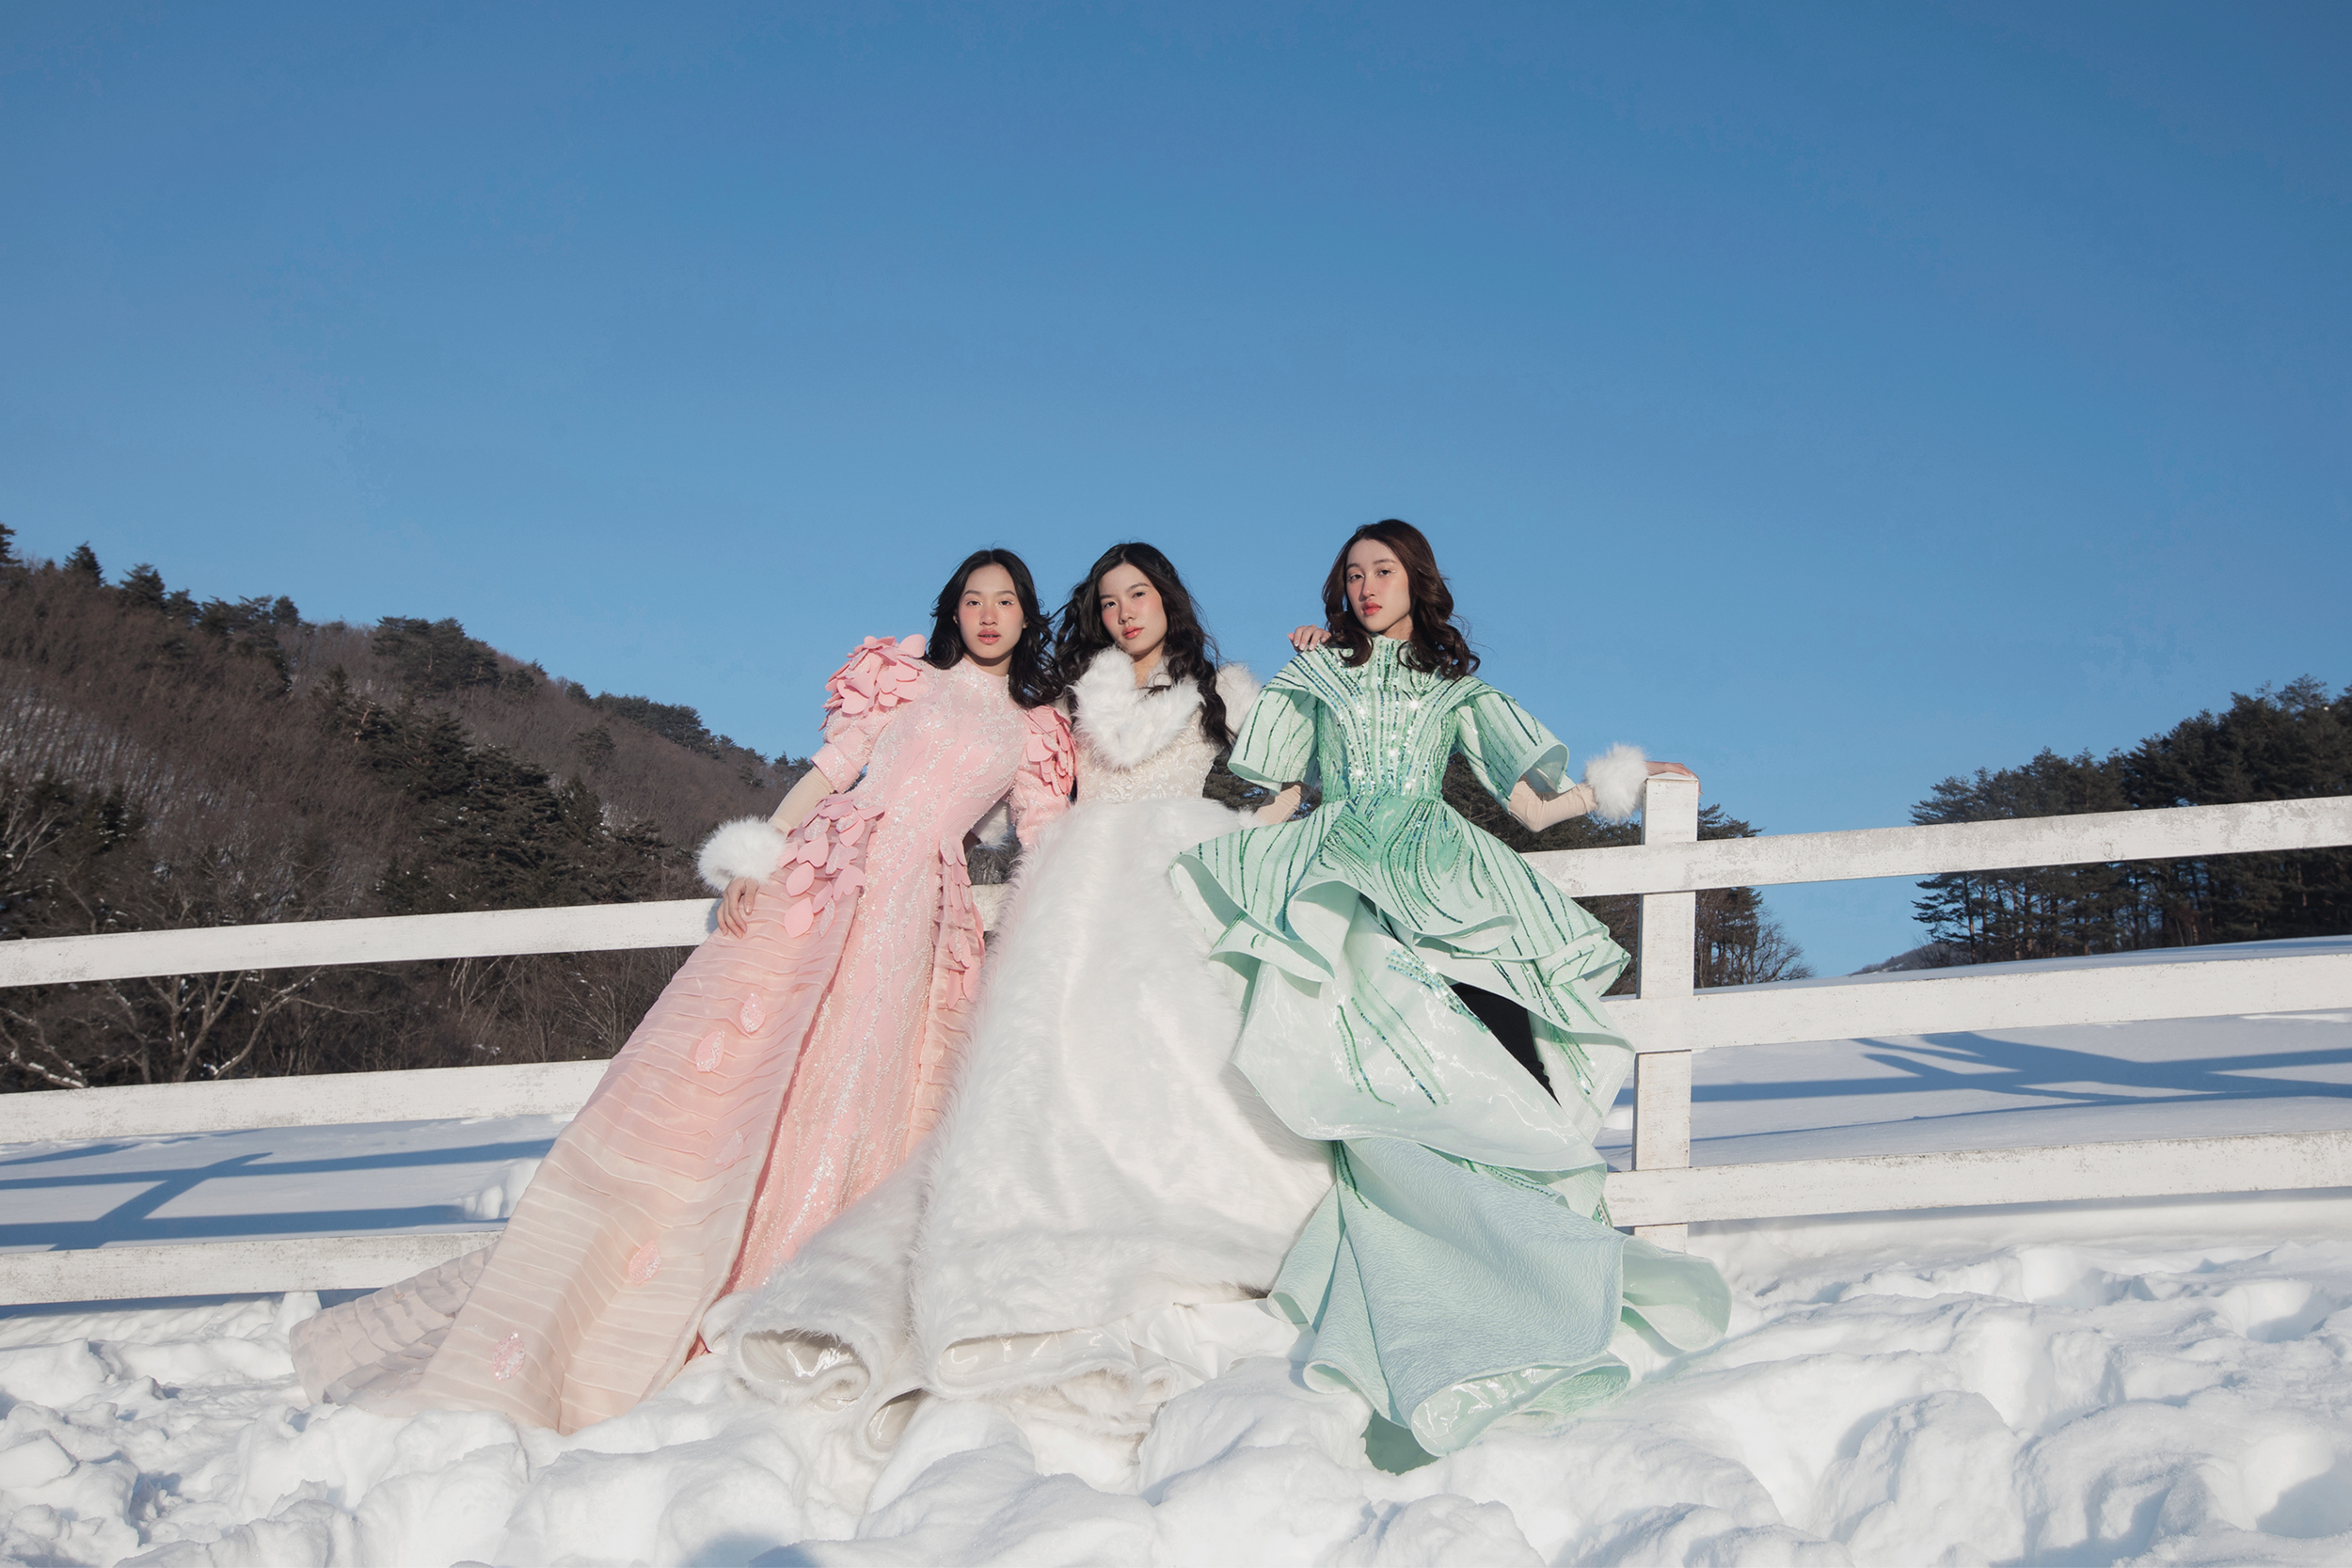 Triển lãm sách ảnh về dự án thời trang lần đầu tiên được thực hiện tại Hàn Quốc- Ảnh 3.